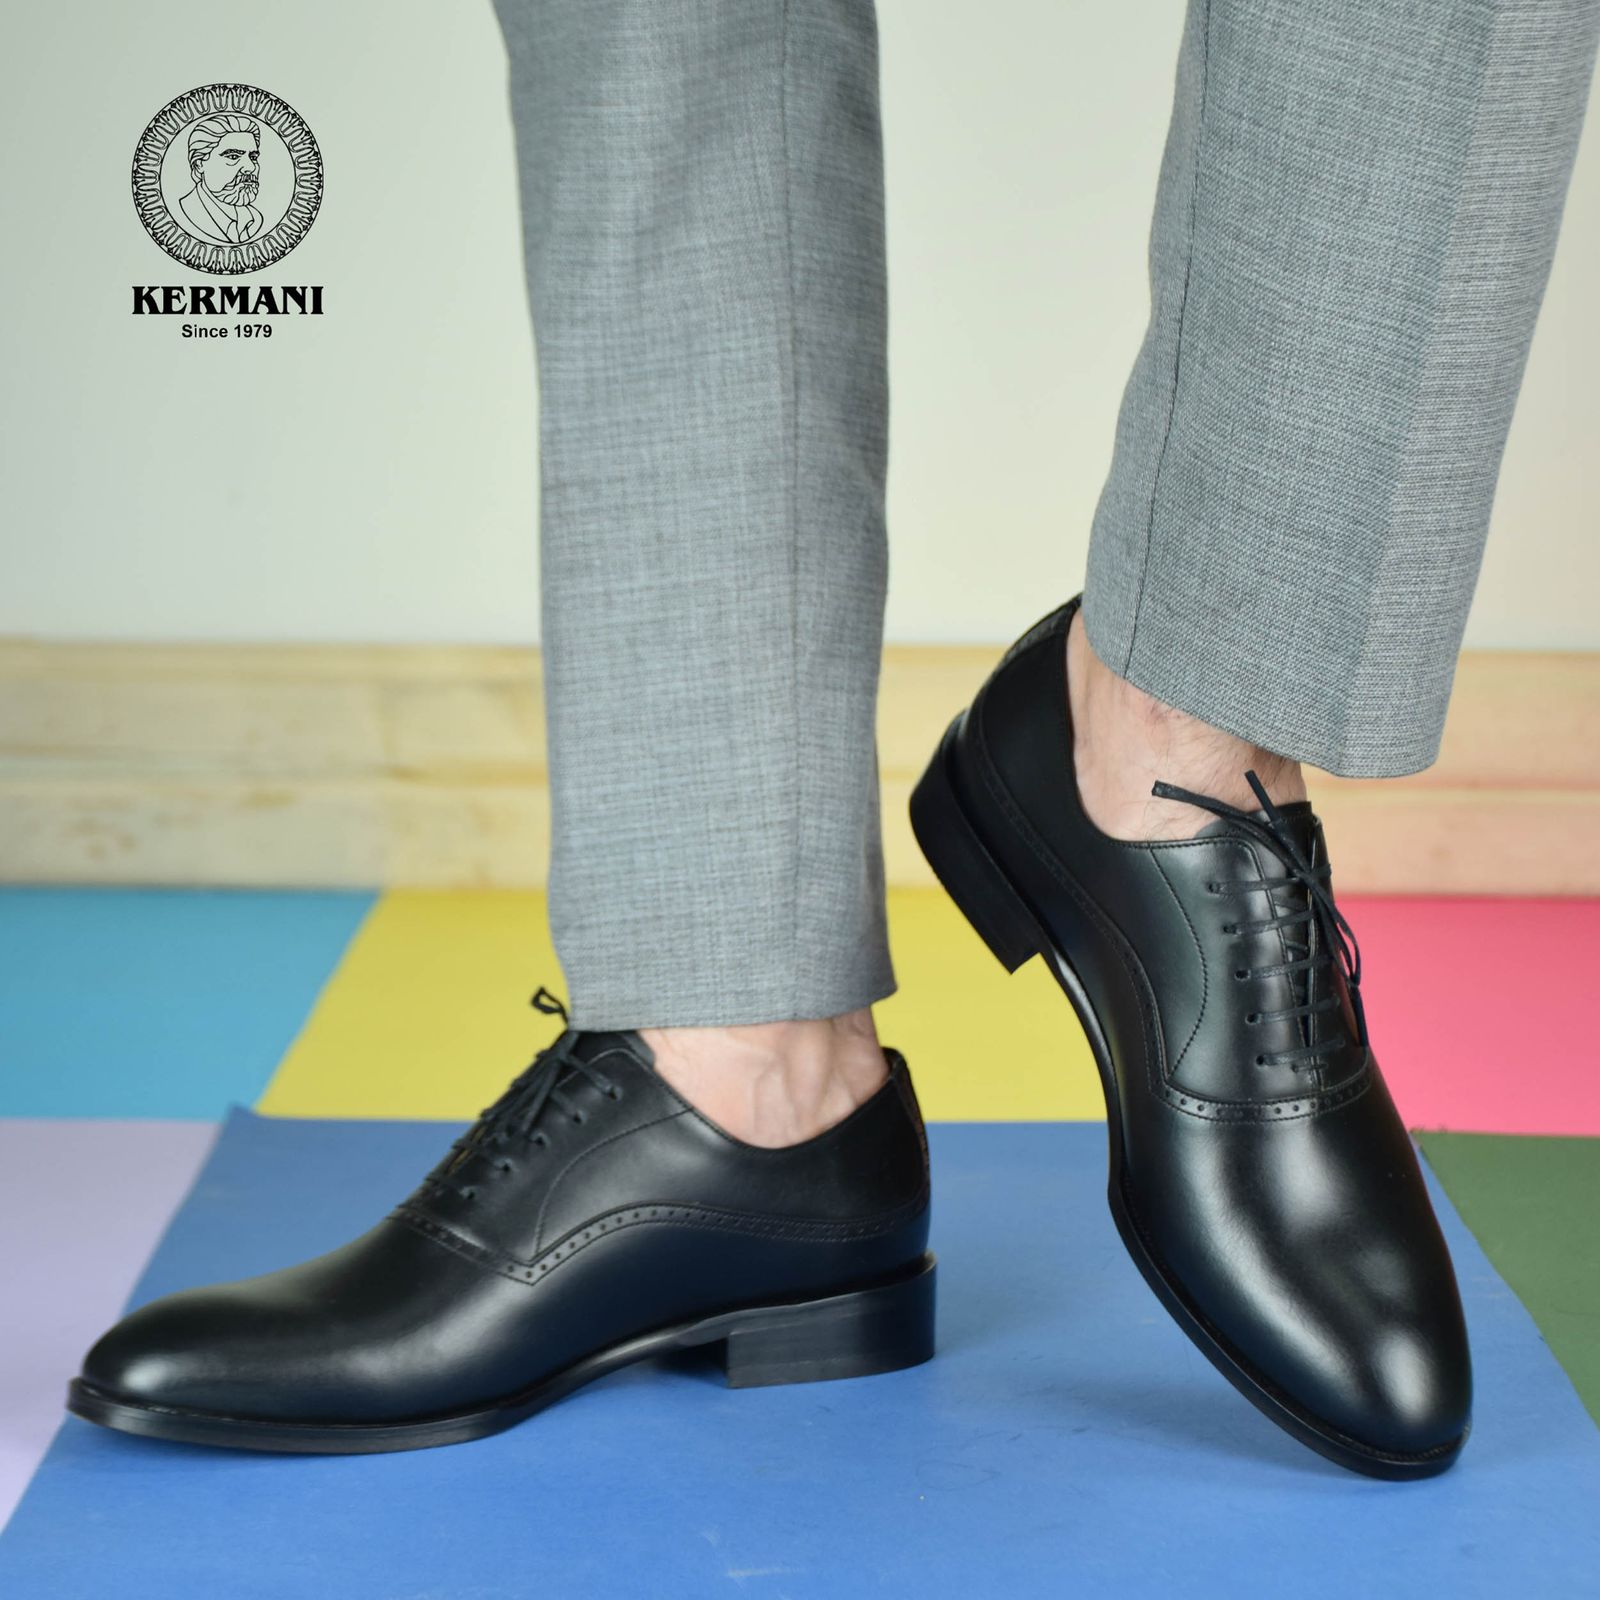 کفش مردانه کرمانی مدل چرم دستدوز طبیعی کد 1071 رنگ مشکی -  - 3